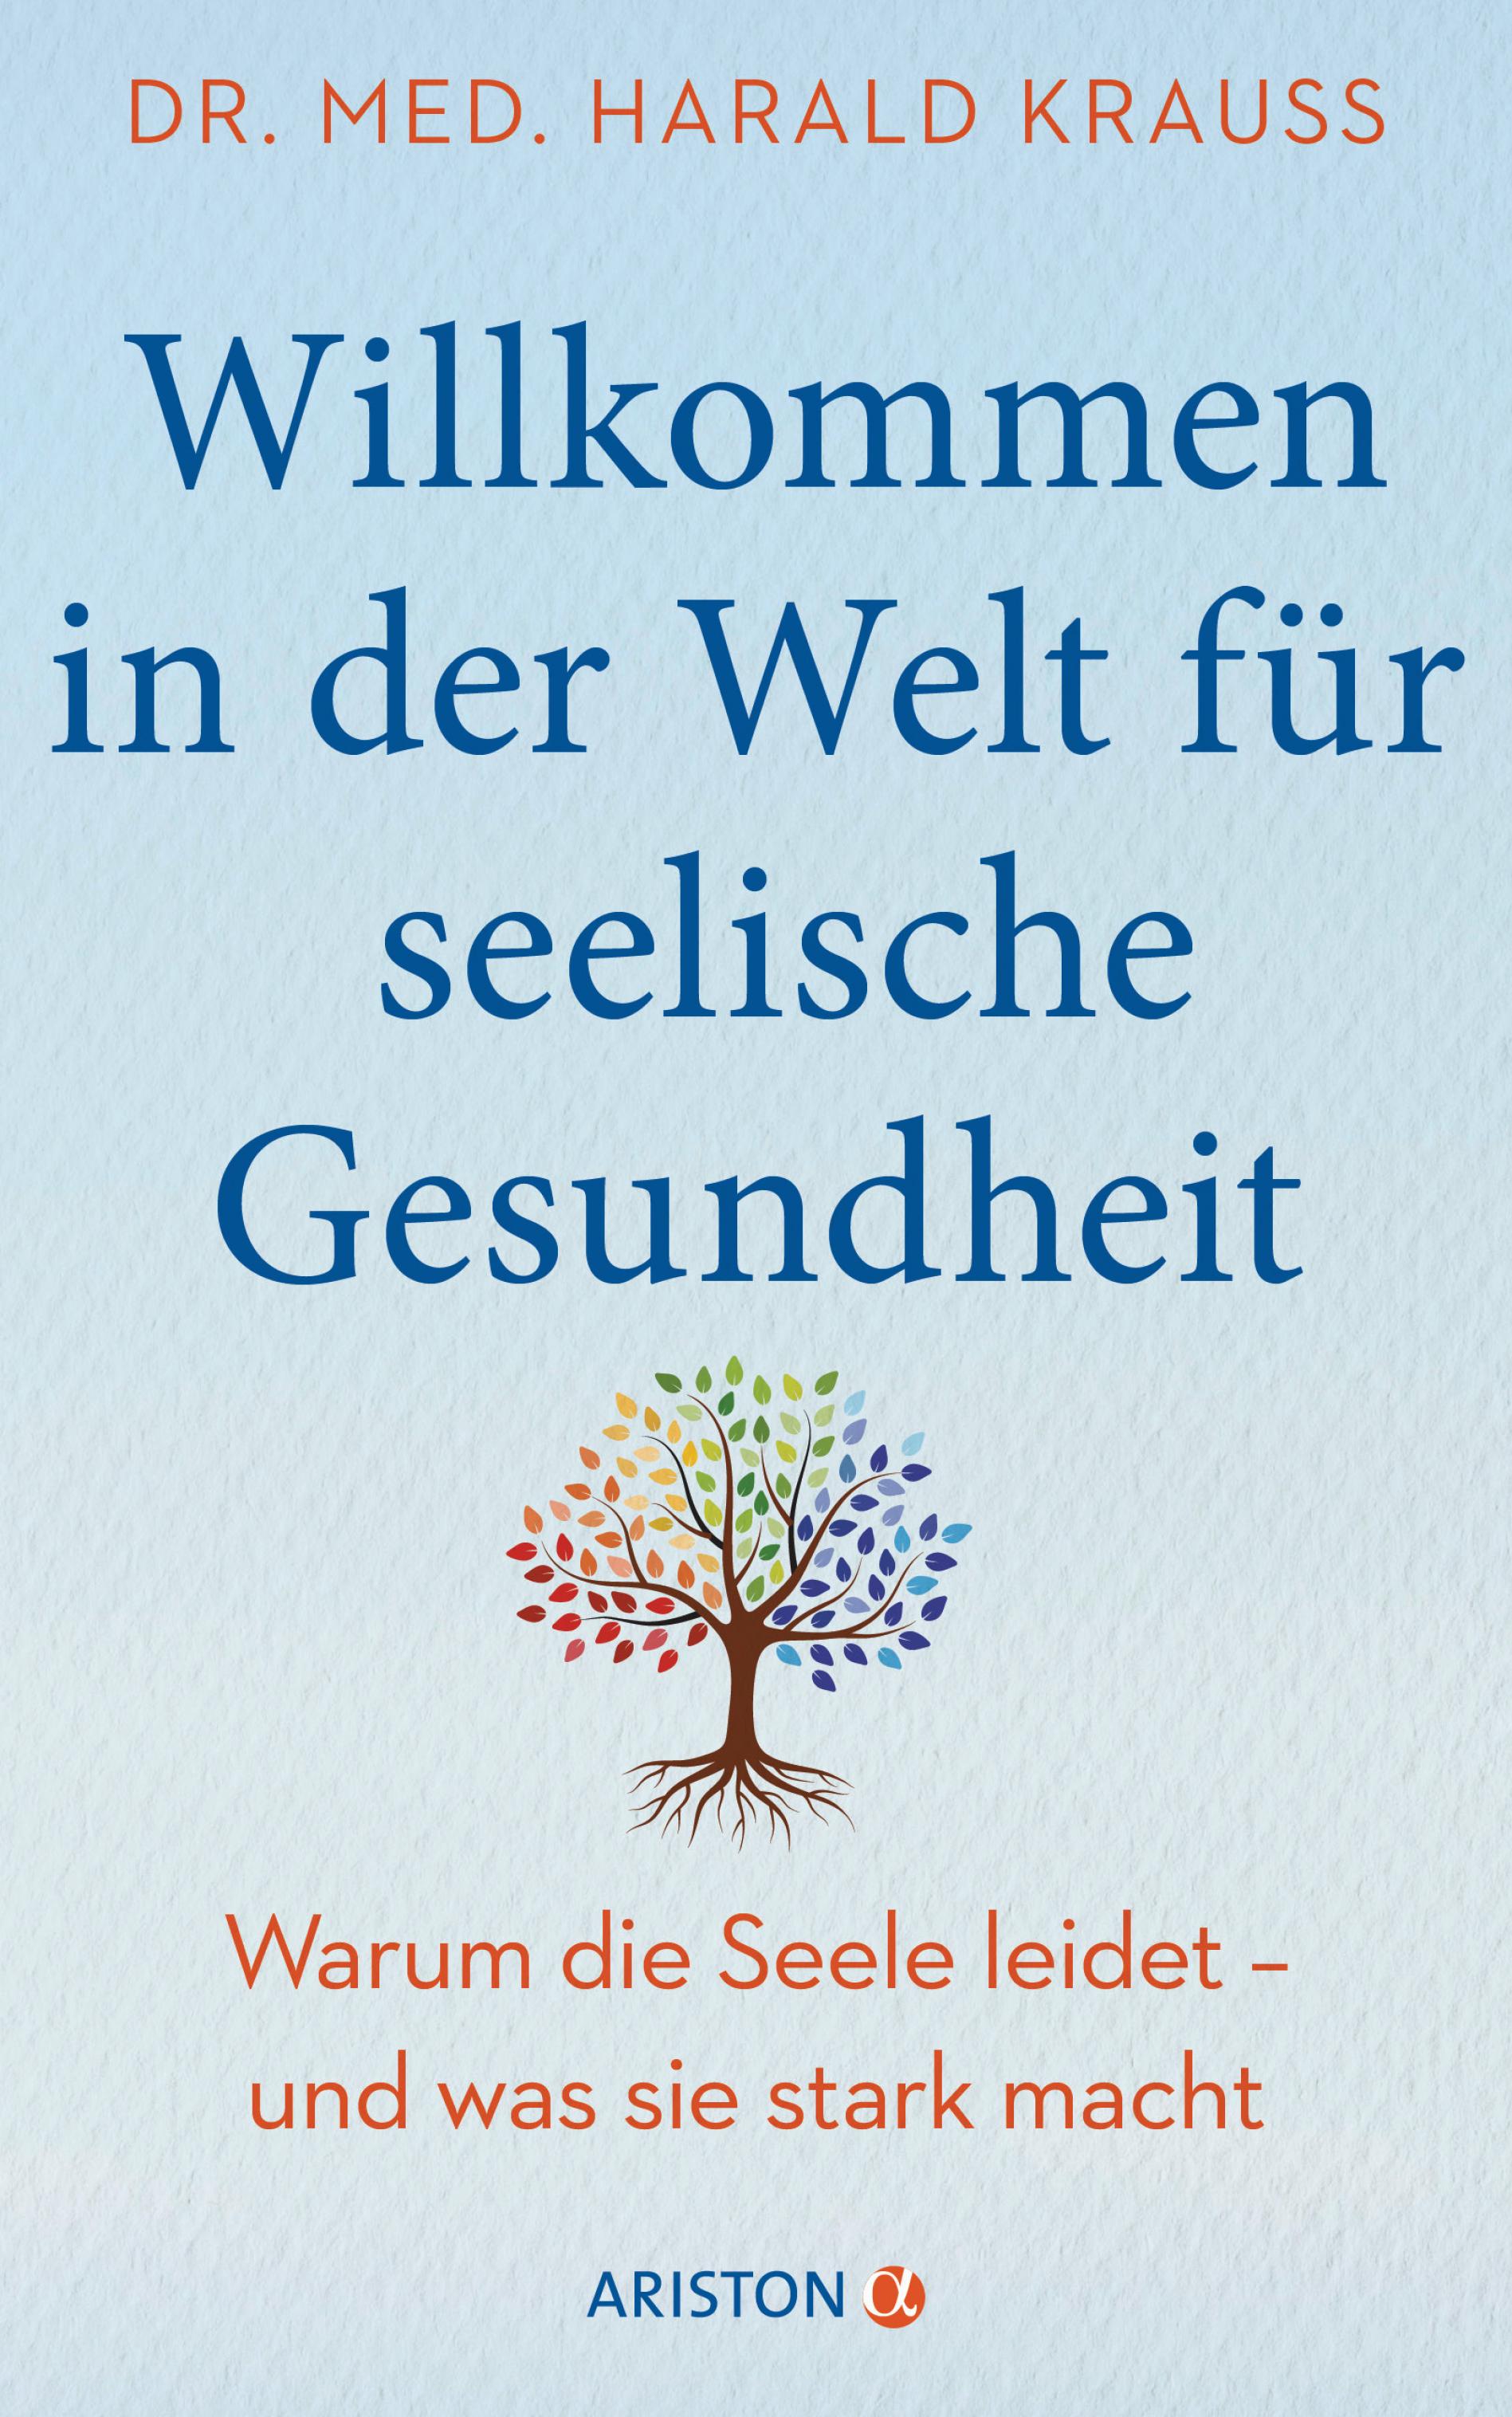 Auf dem Bild sieht man das Cover des Buches „Willkommen in der Welt fuer seelische Gesundheit“ von Harald Krauss. Blaue Schrift auf hellblauem Untergrund, ein Baum mit bunten Blättern.